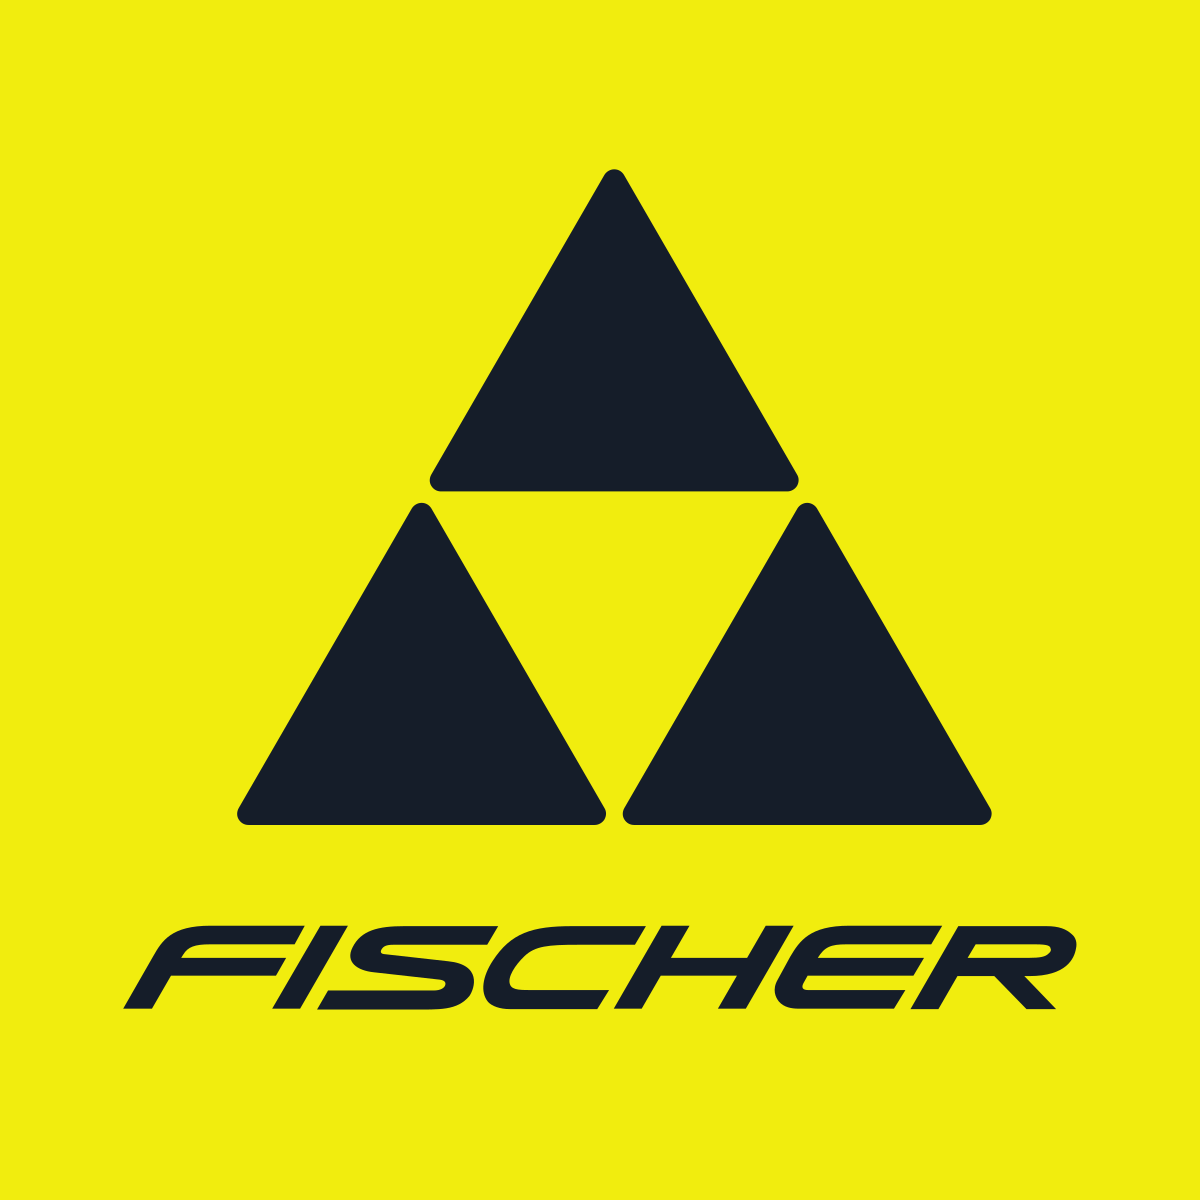 Fischer_logo.png